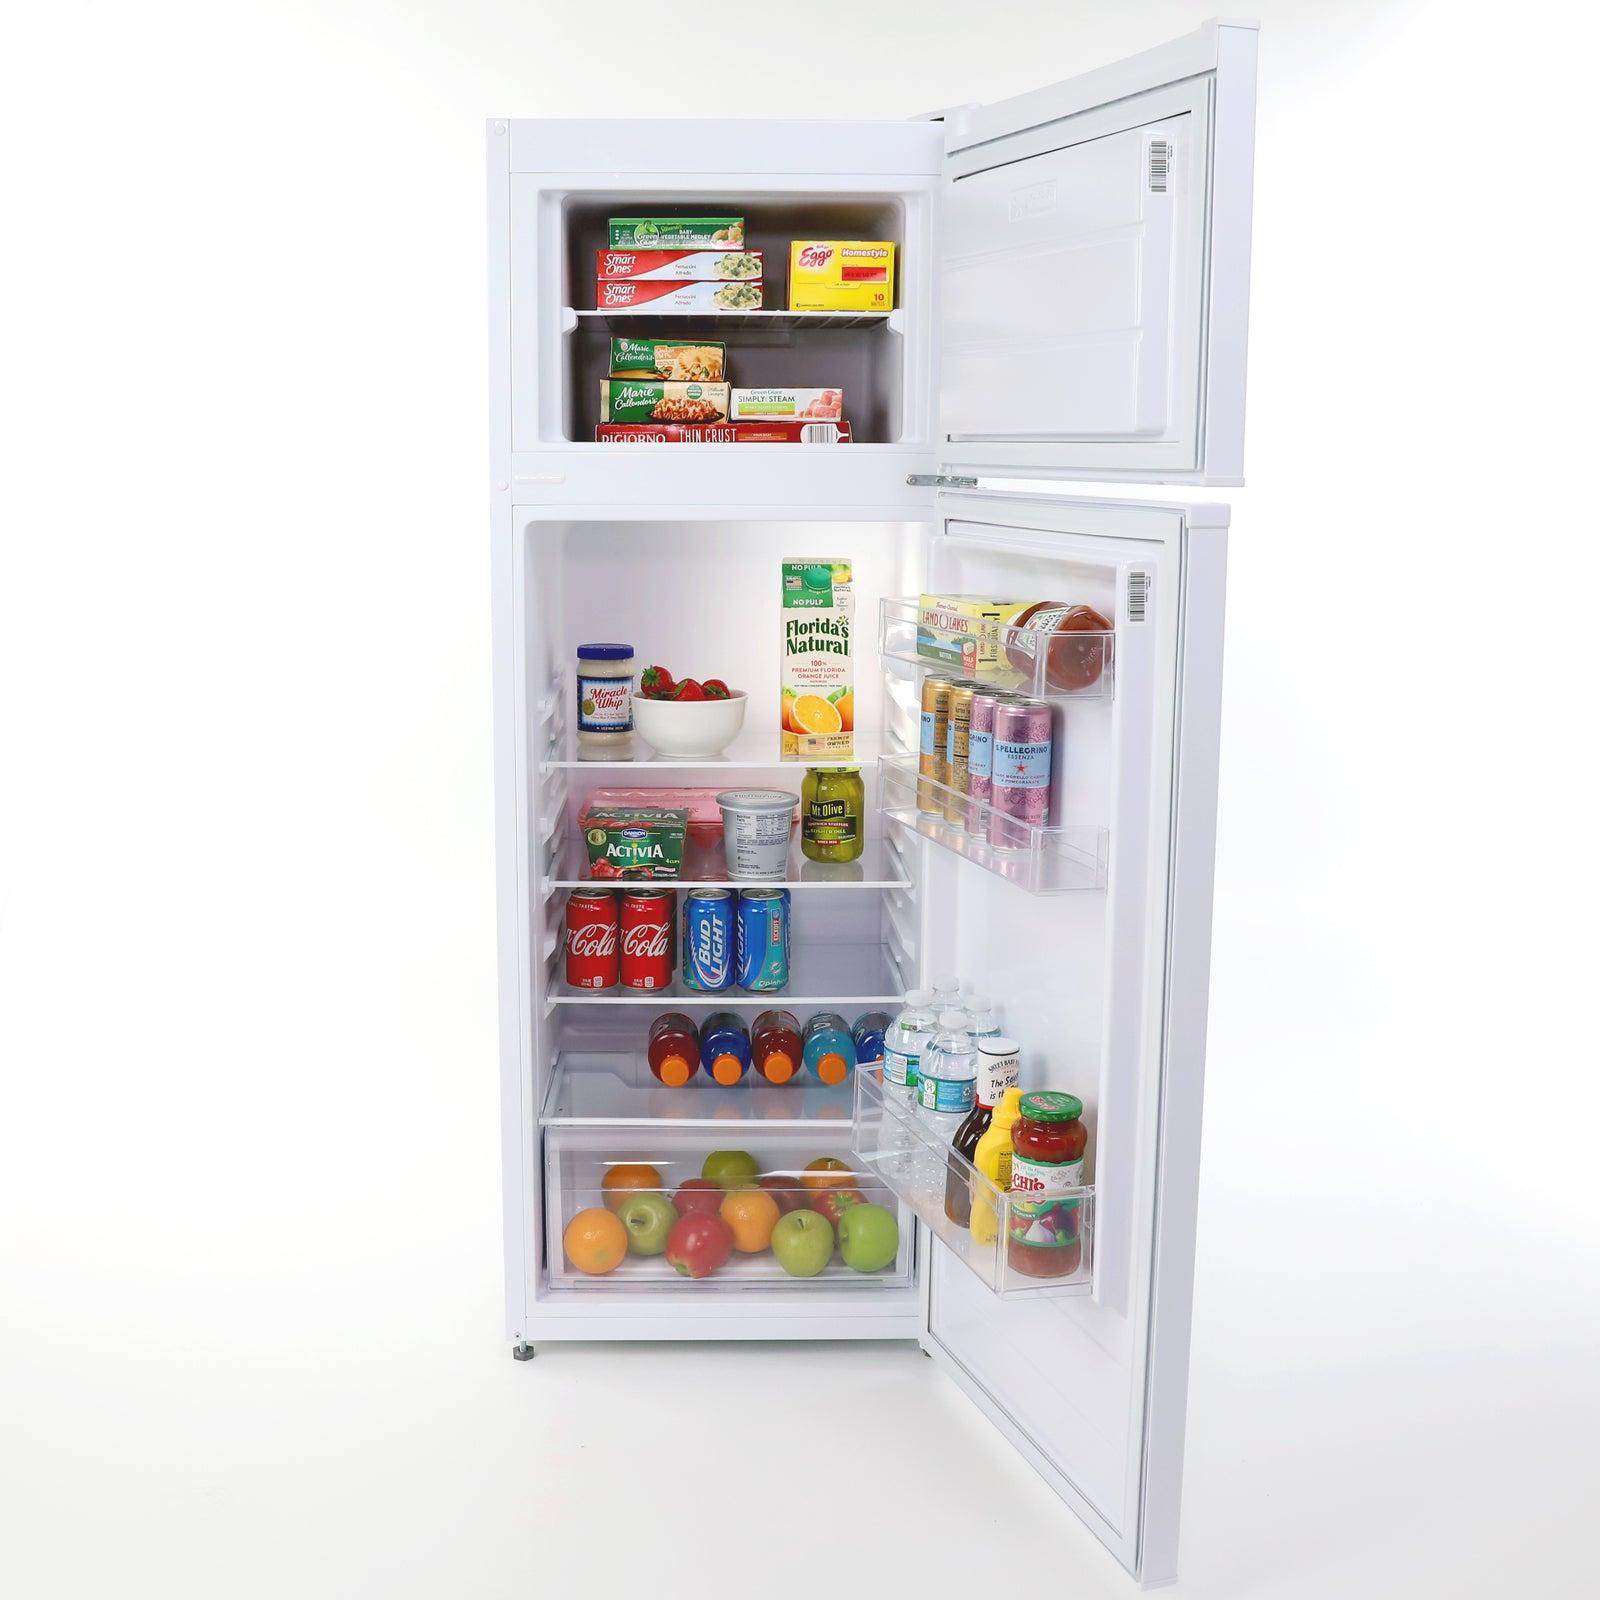 Avanti 7.4 cu. ft. Apartment Size Refrigerator - White / 7.4 cu. ft.